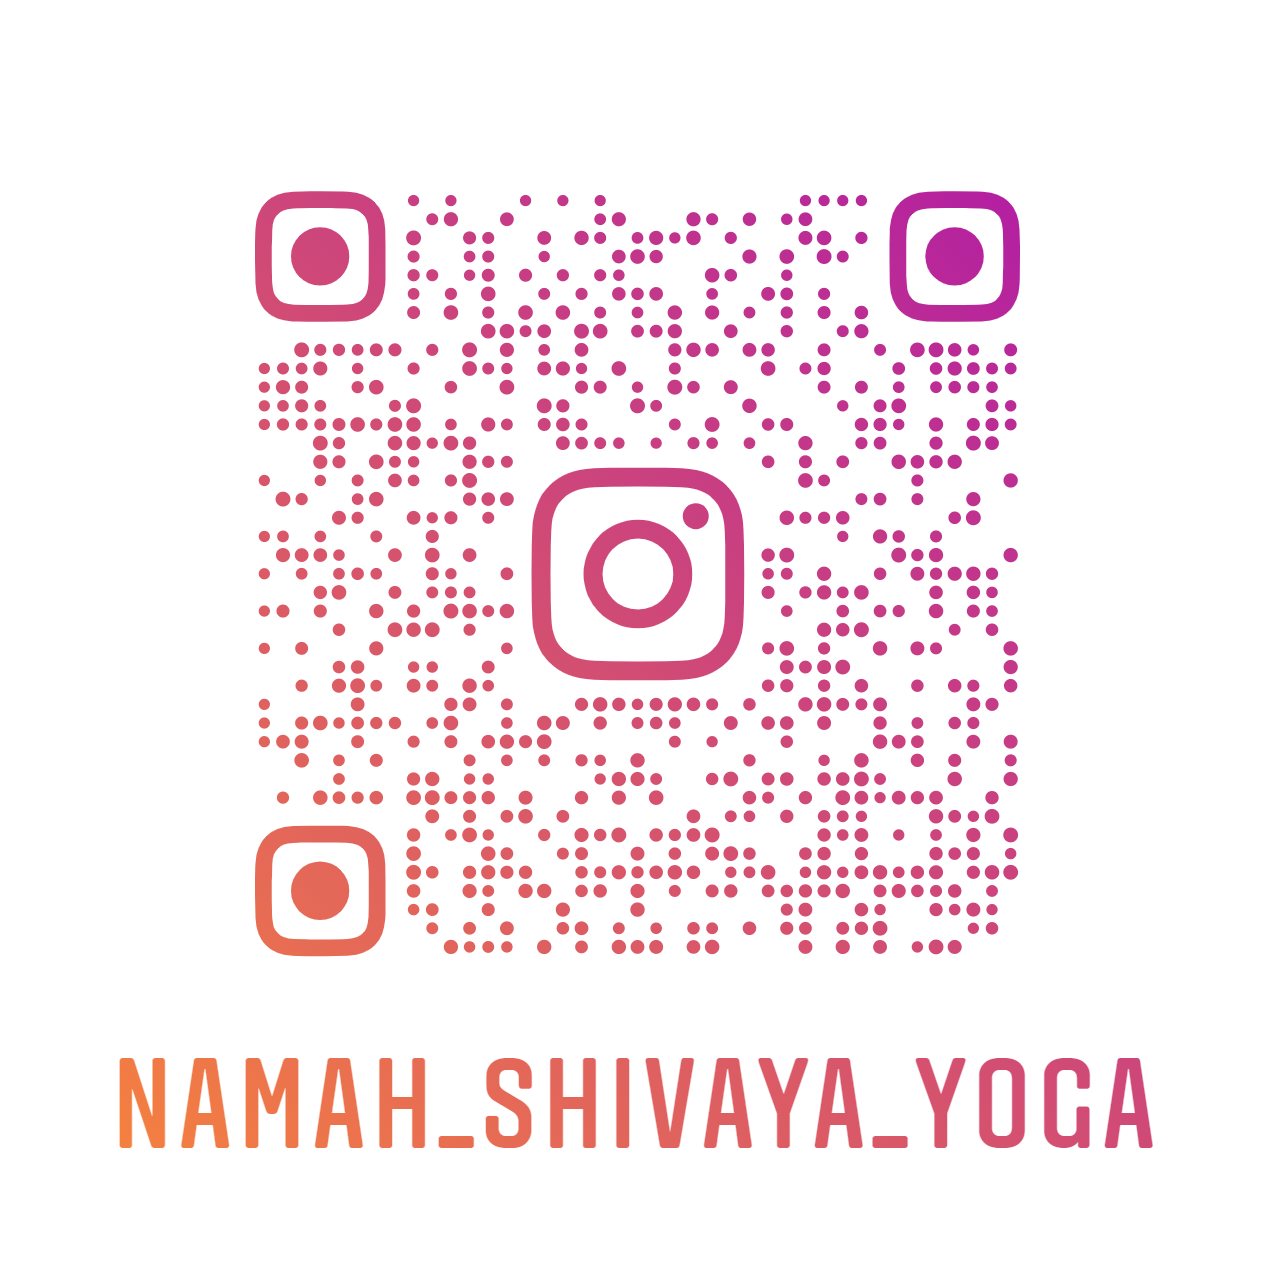 Namah shivaya yoga nametag